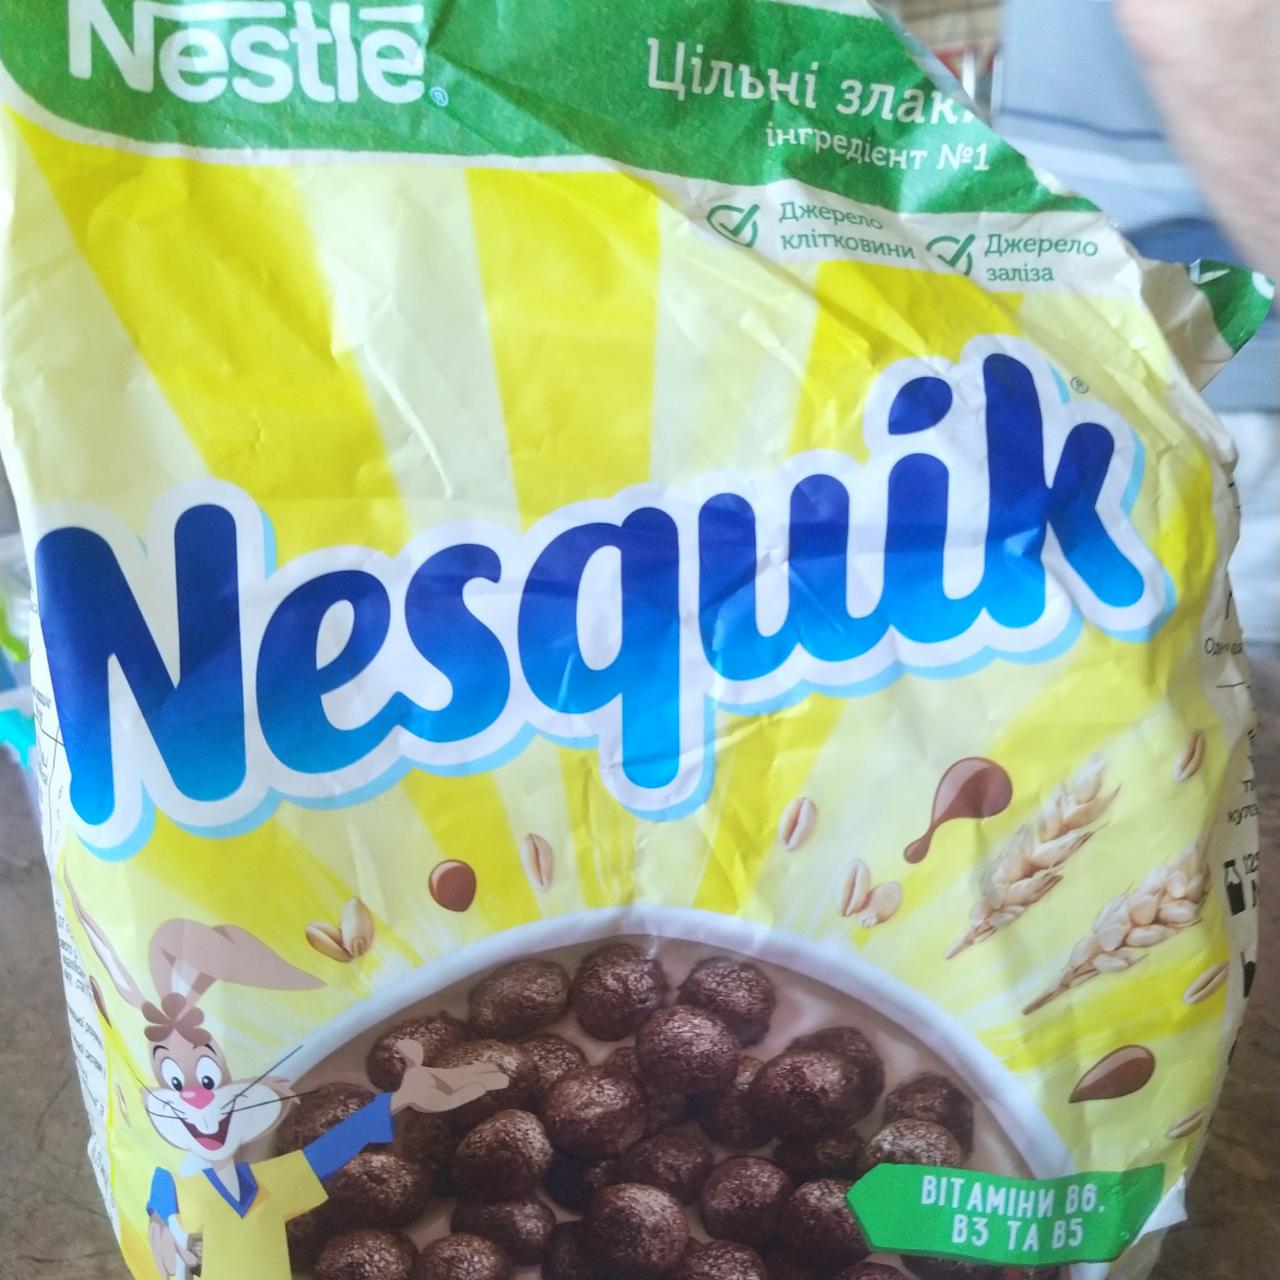 Фото - готовый сухой завтрак из цельных злаков шоколадные шарики Несквик Nestlé